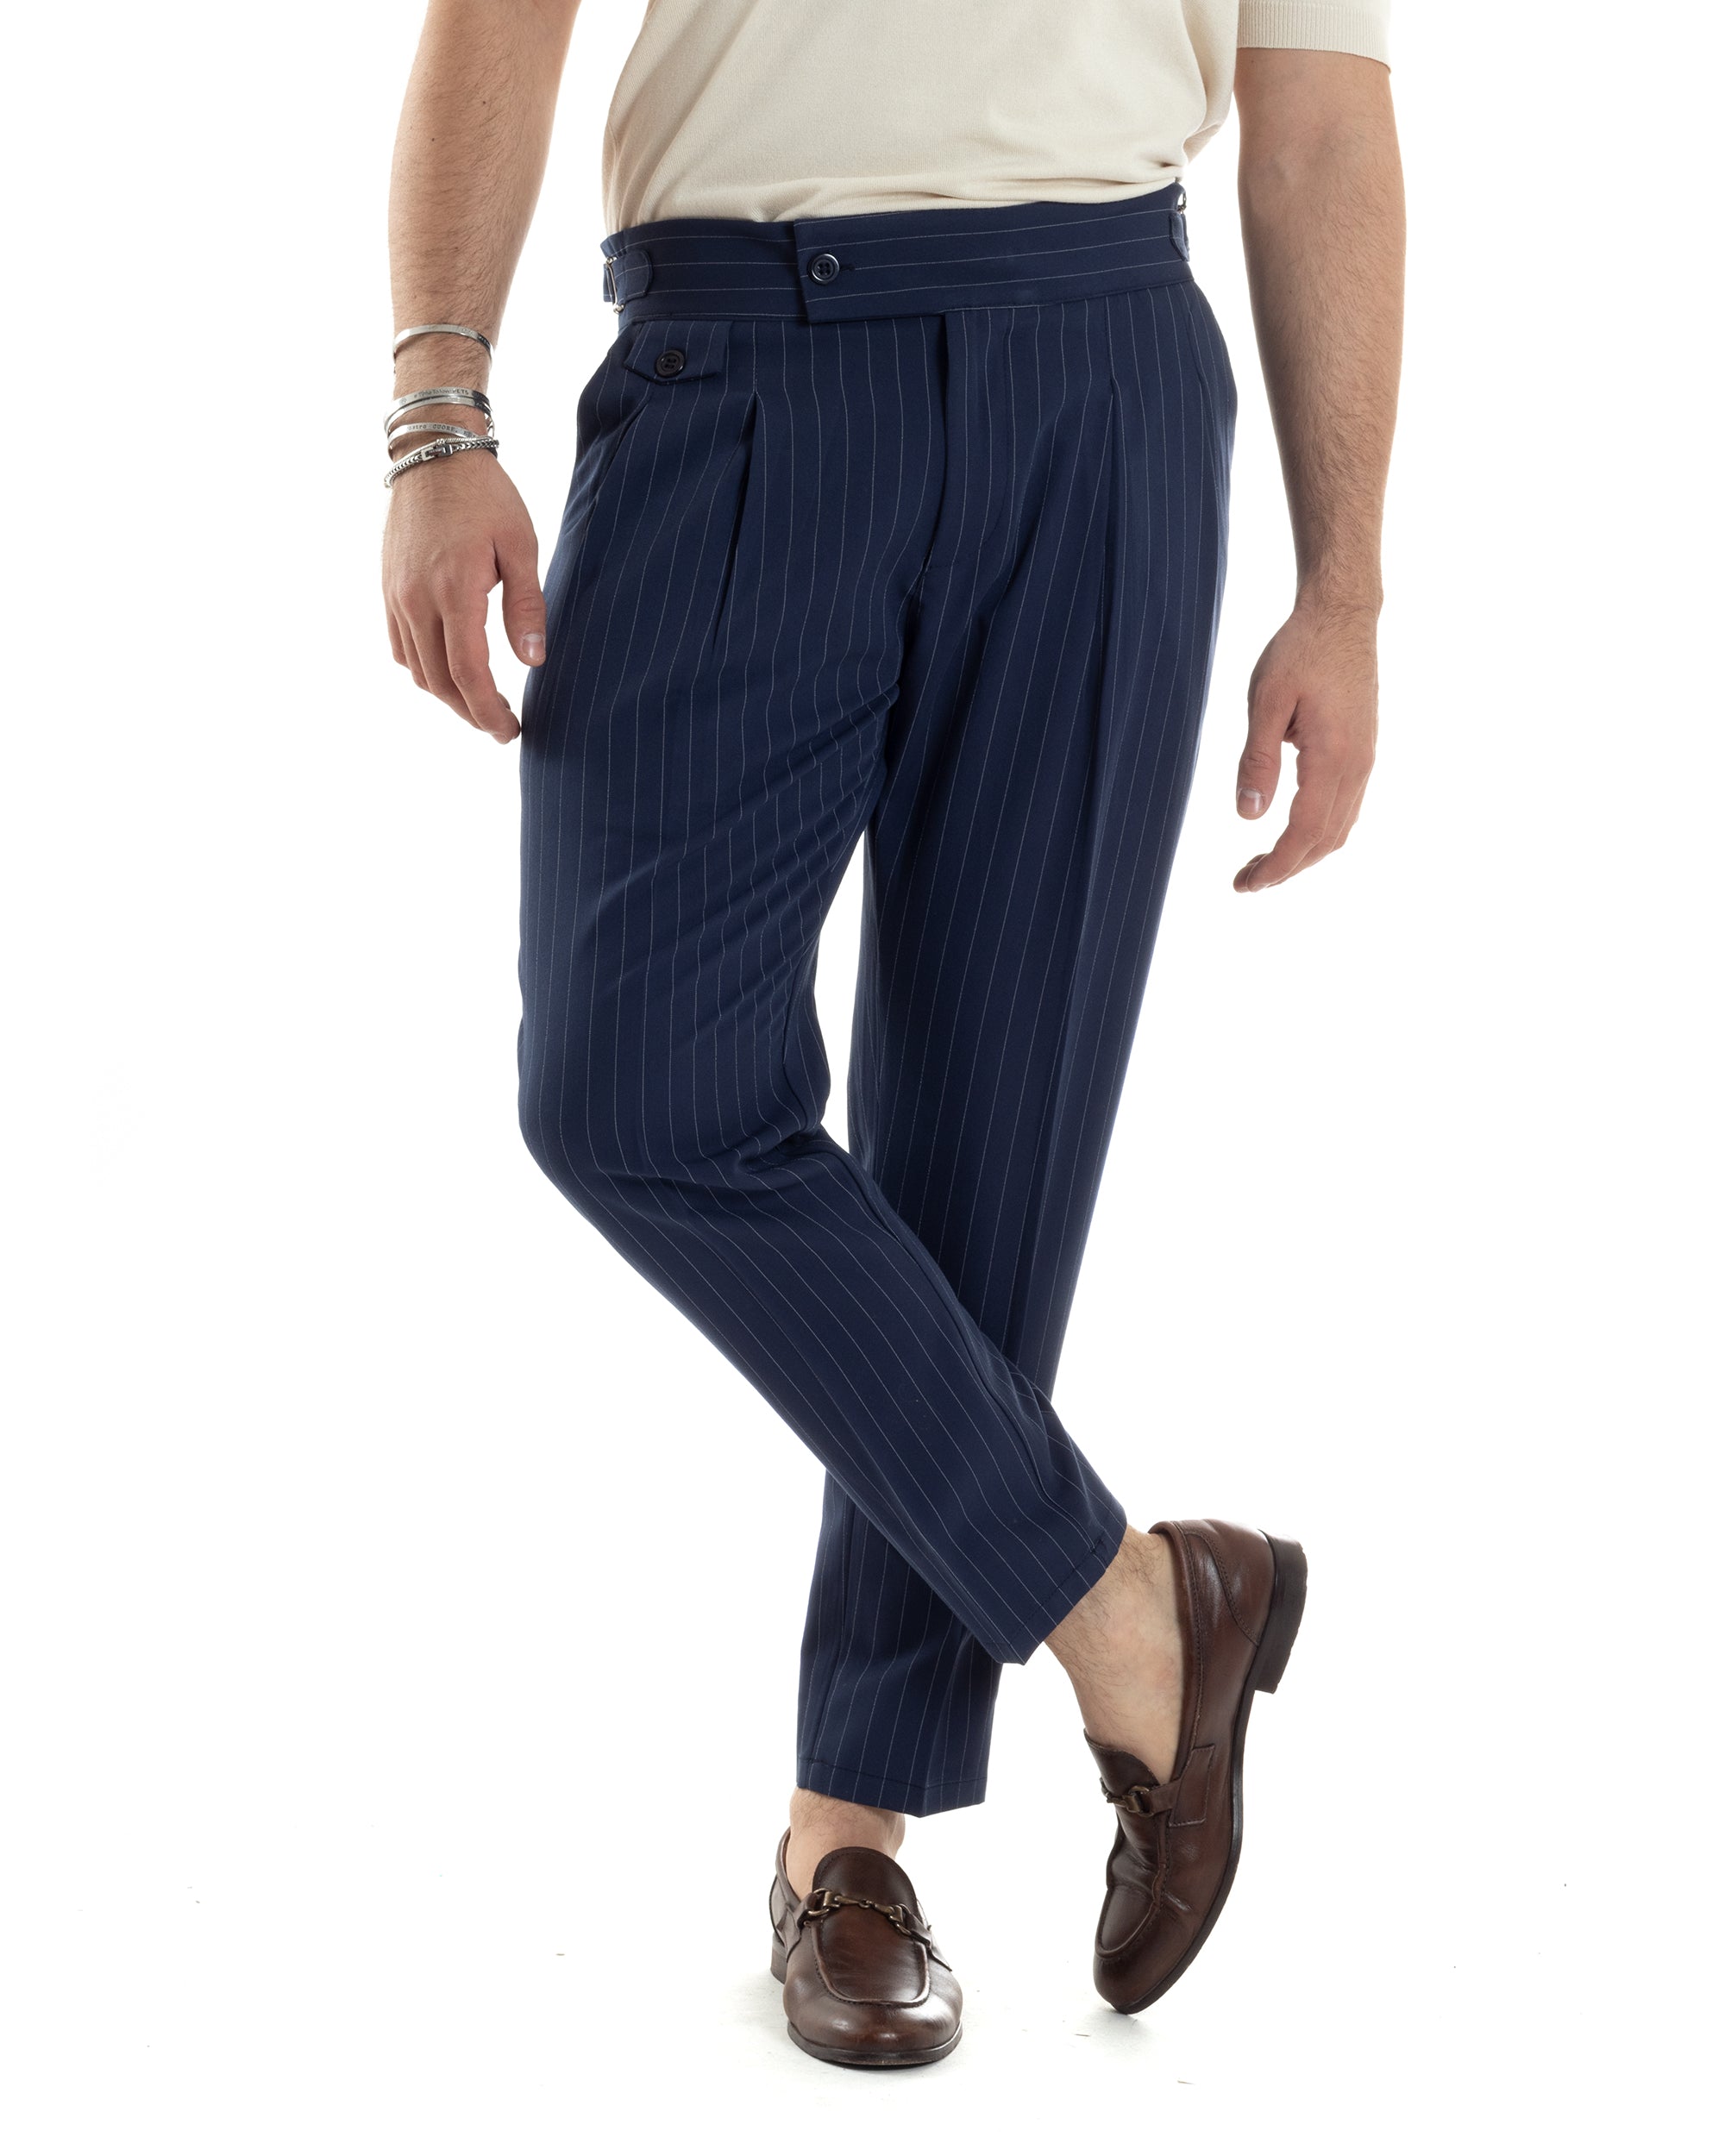 Pantaloni Uomo Classico Gessato Rigato Vita Alta Pinces Abbottonatura Allungata Fibbia Casual Blu GIOSAL-P6084A